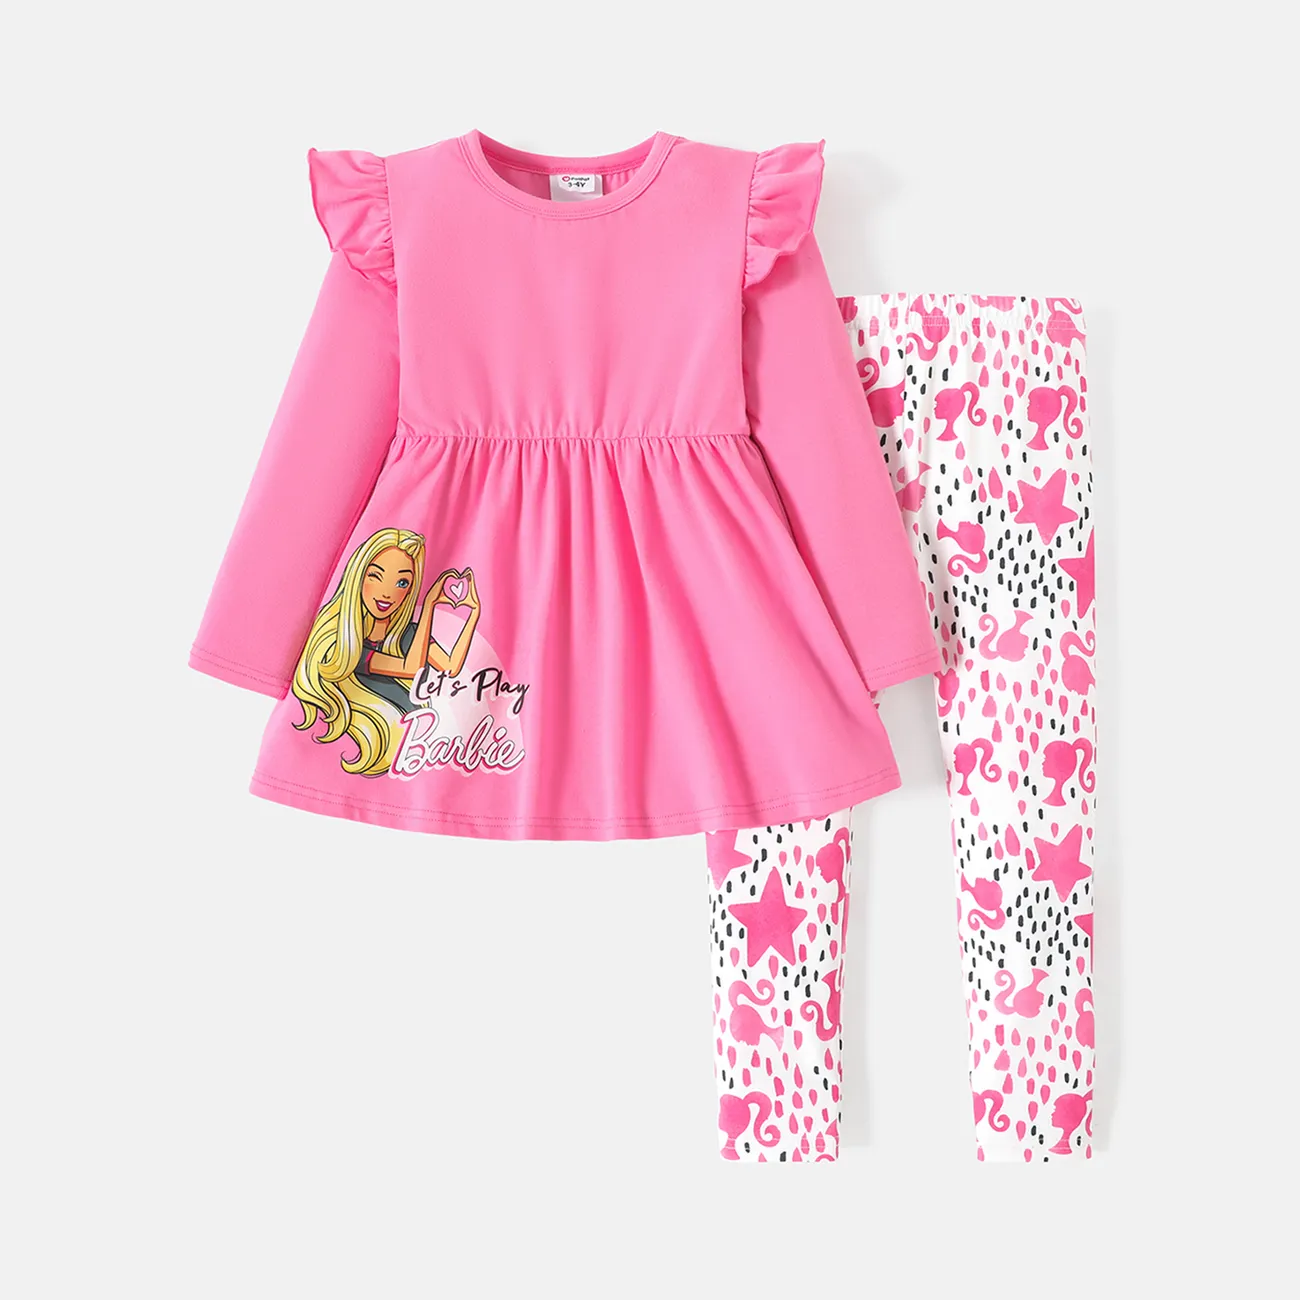 Barbie 2 unidades Criança Menina Extremidades franzidas Bonito conjuntos de camisetas Rosa big image 1